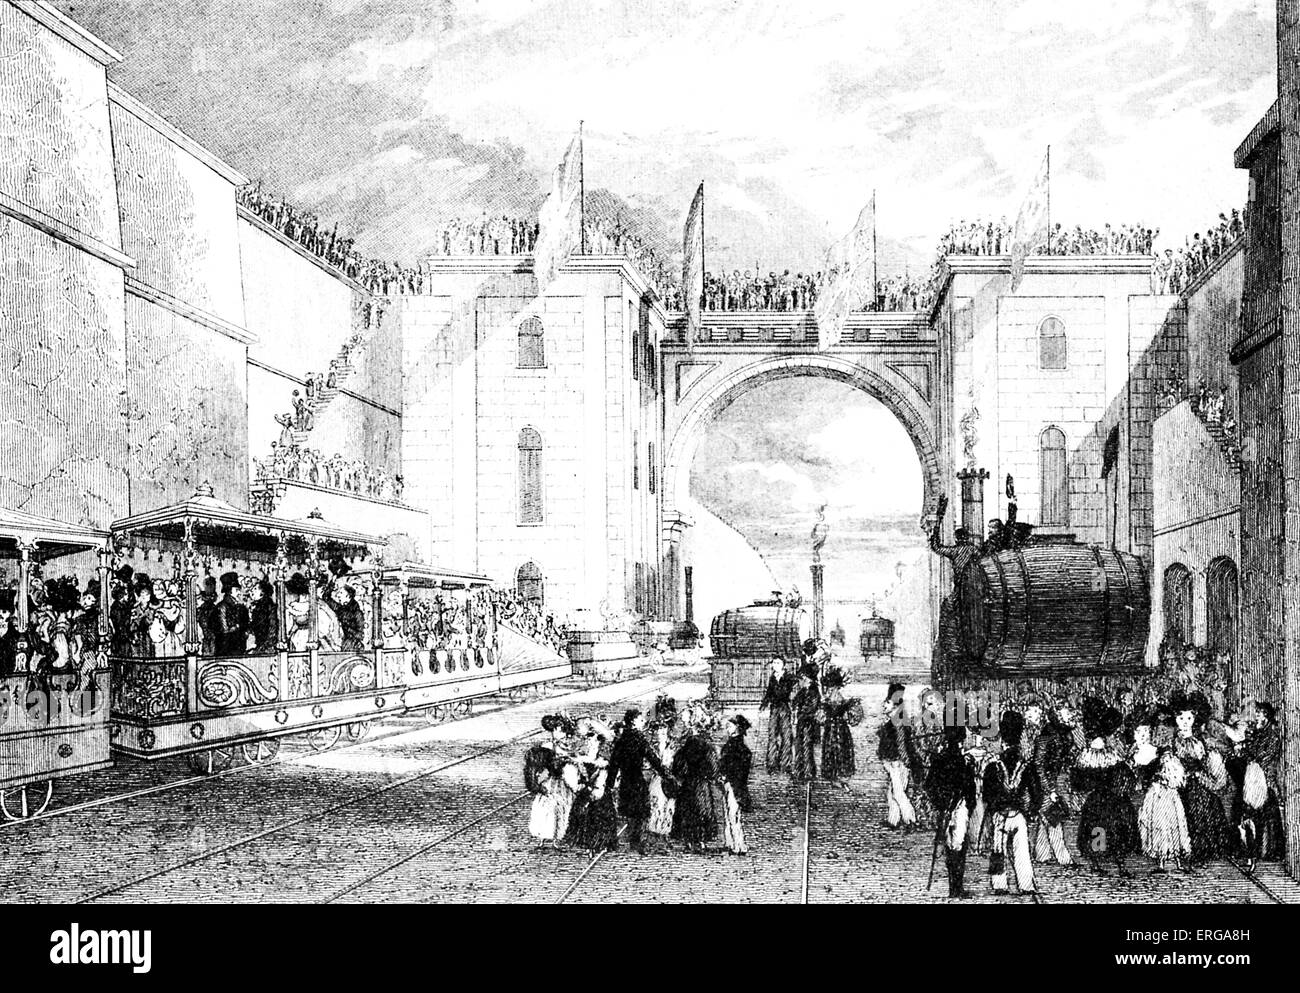 Einweihung der Bahn zwischen Liverpool und Manchester, 15. September 1830. Der offizielle Konvoi wurde vor der "maurische Bogen" am Bahnhof Liverpool beendet. Nach der Gravur von I. Shaw. Stockfoto